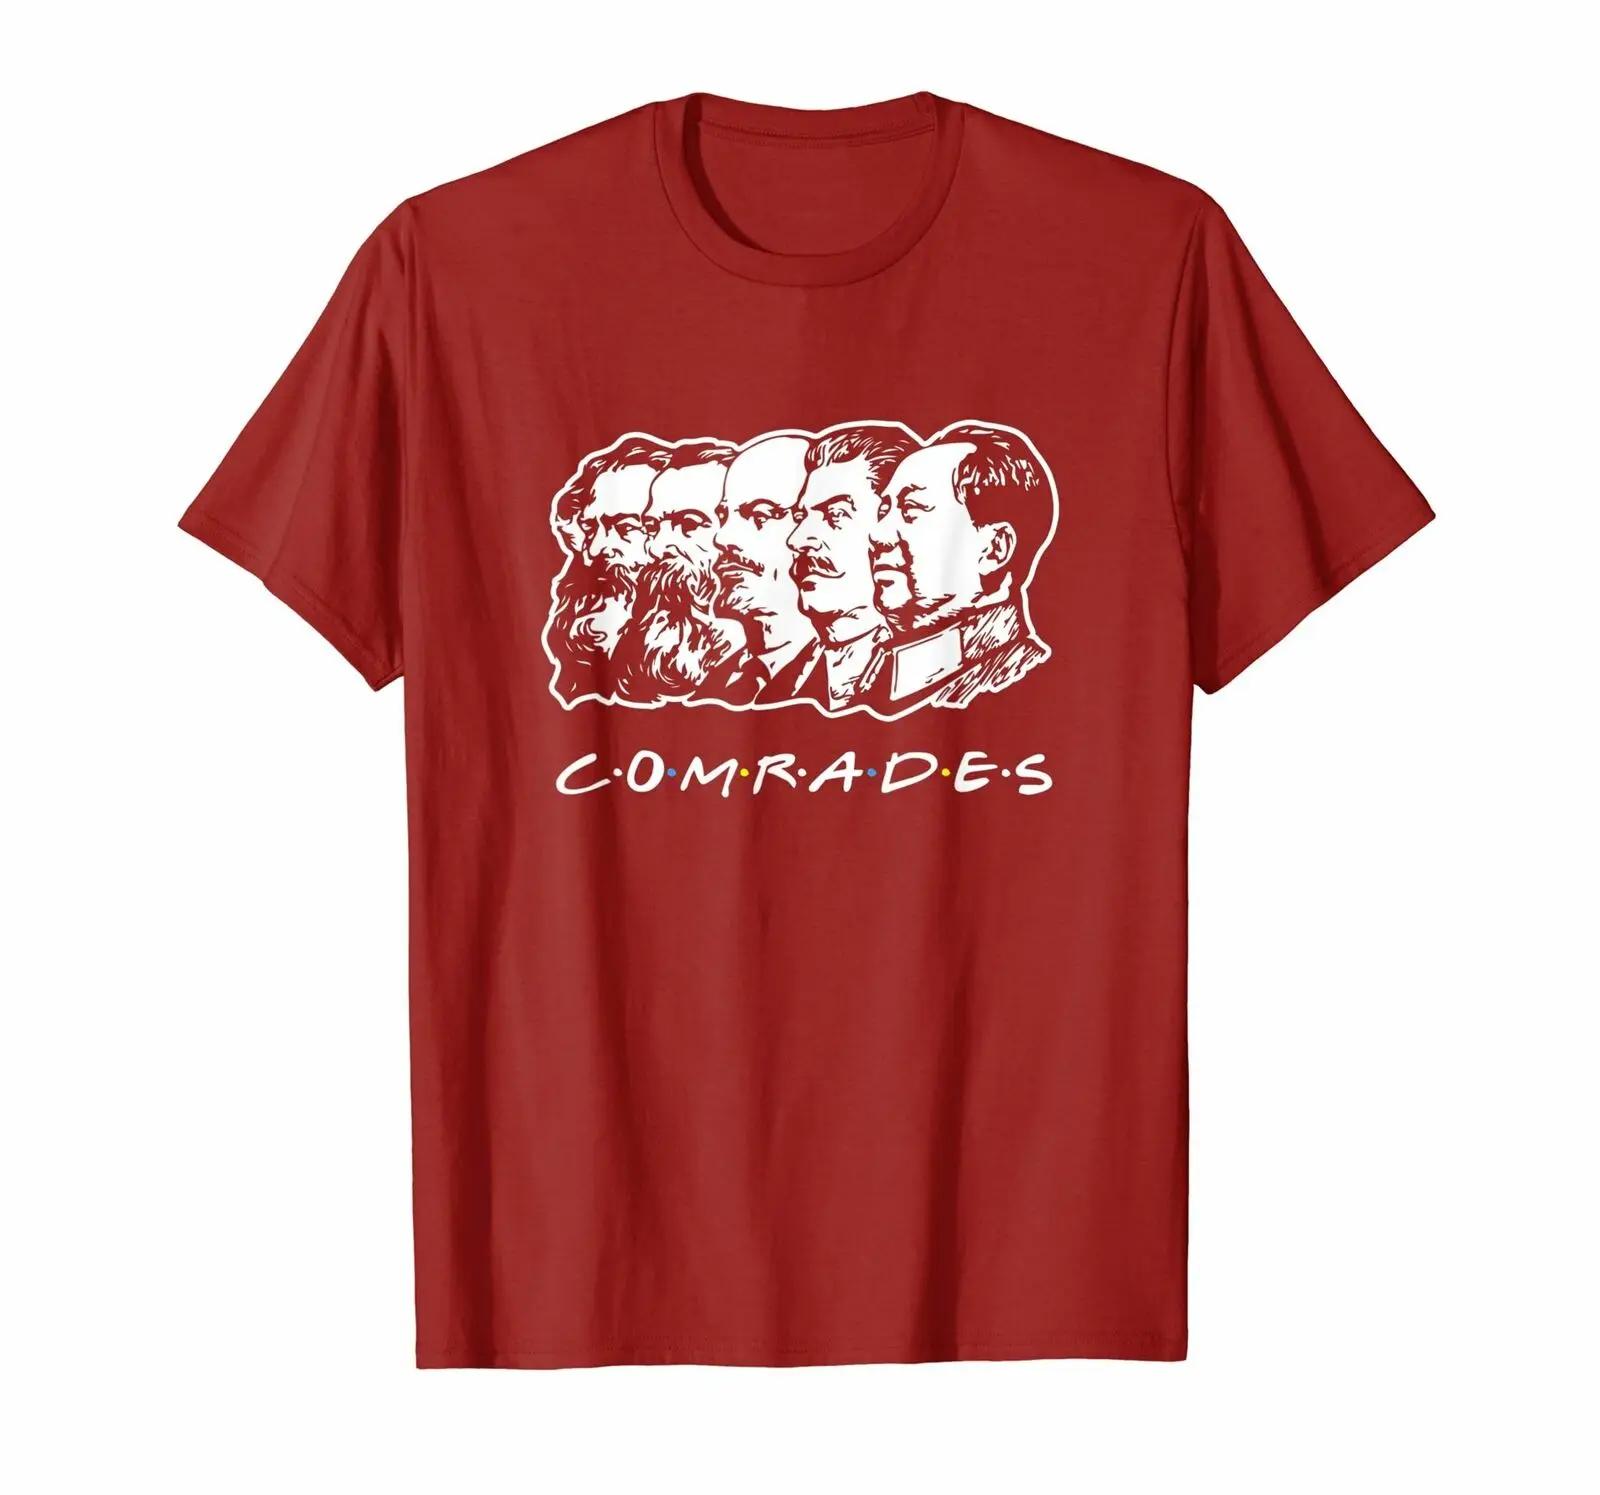 Коммунистические друзья Футболка-коммунистическая футболка для вечеринки для мужчин размер S-3XL - Цвет: Red